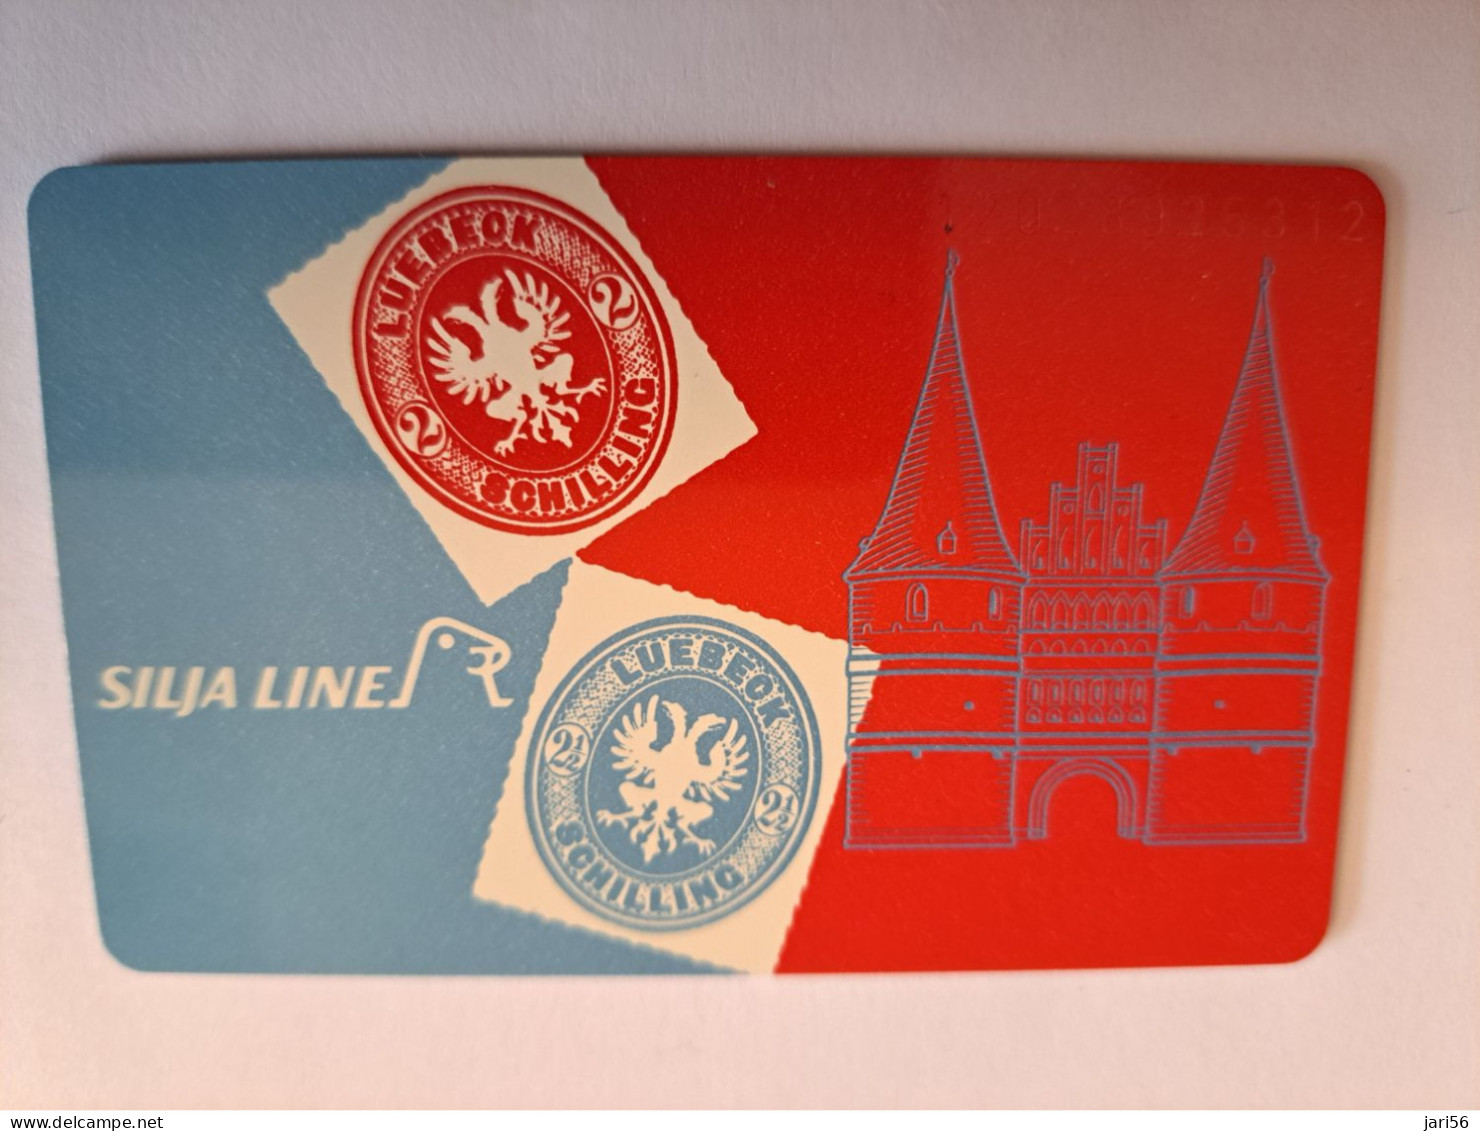 DUITSLAND/ GERMANY  CHIPCARD /SILJA LINE/ LUBECK/ TRAVEMUNDE/HELSINKI/STOCKHOLM    O 020/  5000 EX / MINT CARD **16605** - K-Series : Serie Clientes